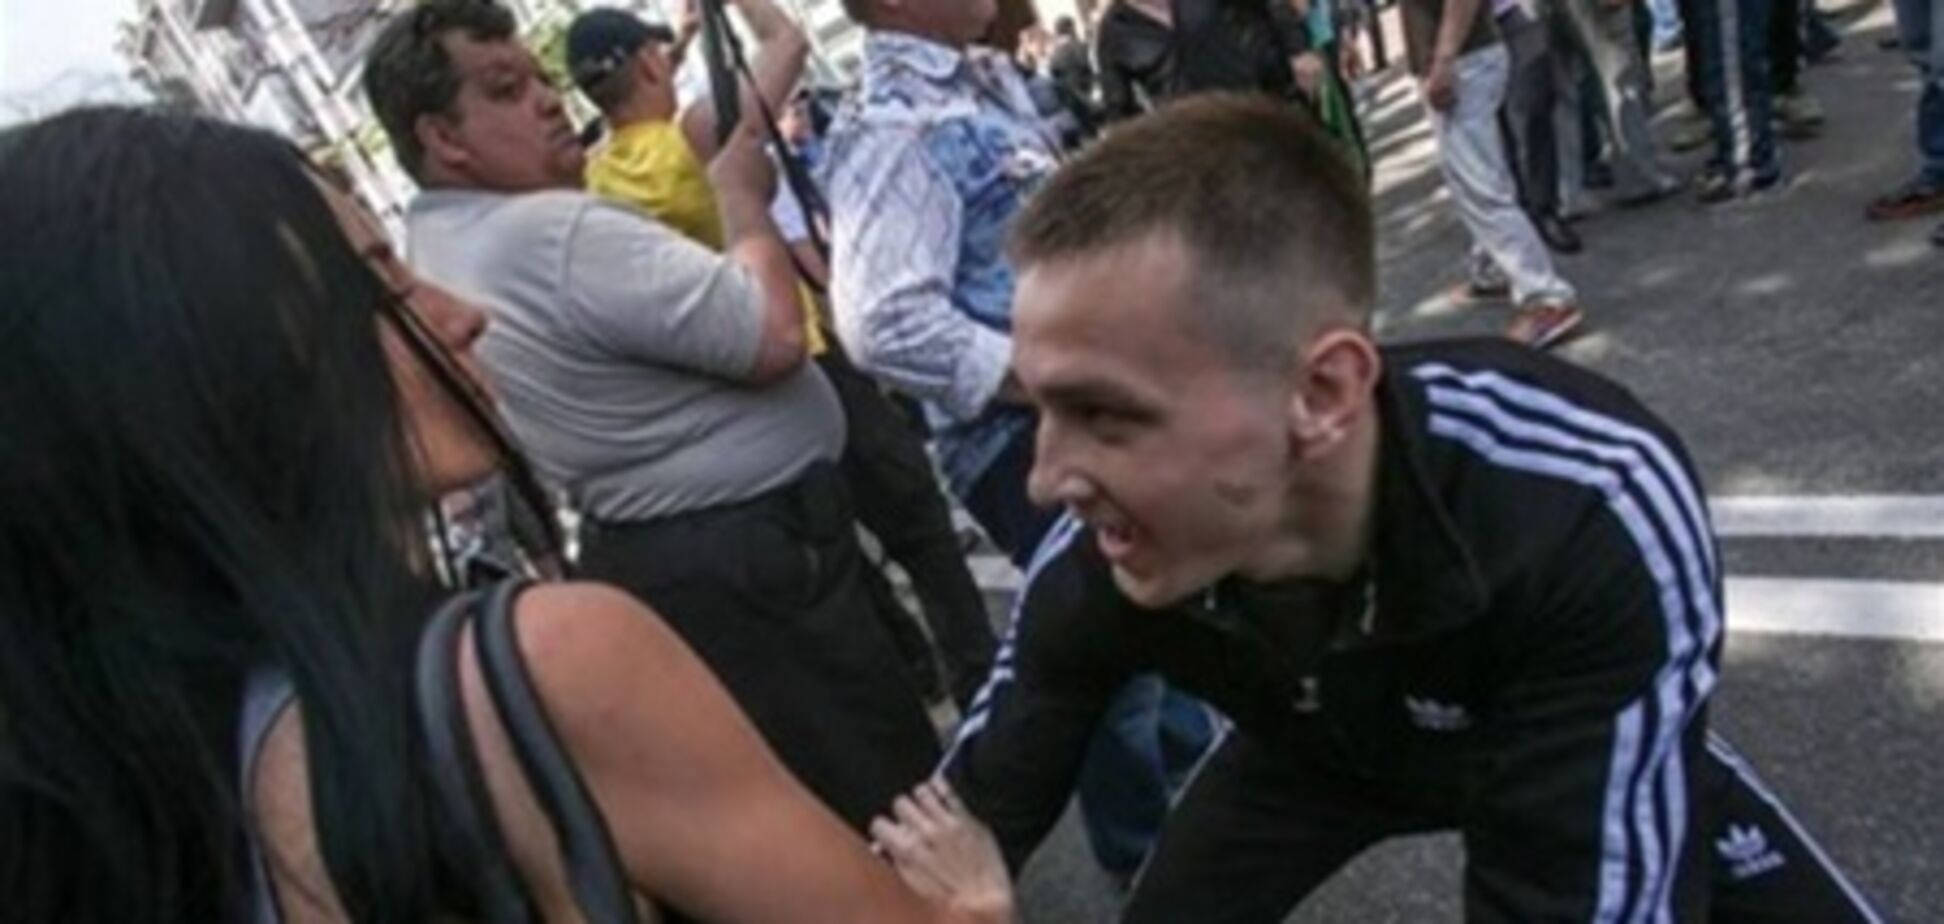 Установлены личности еще двух участников драки 18 мая в Киеве